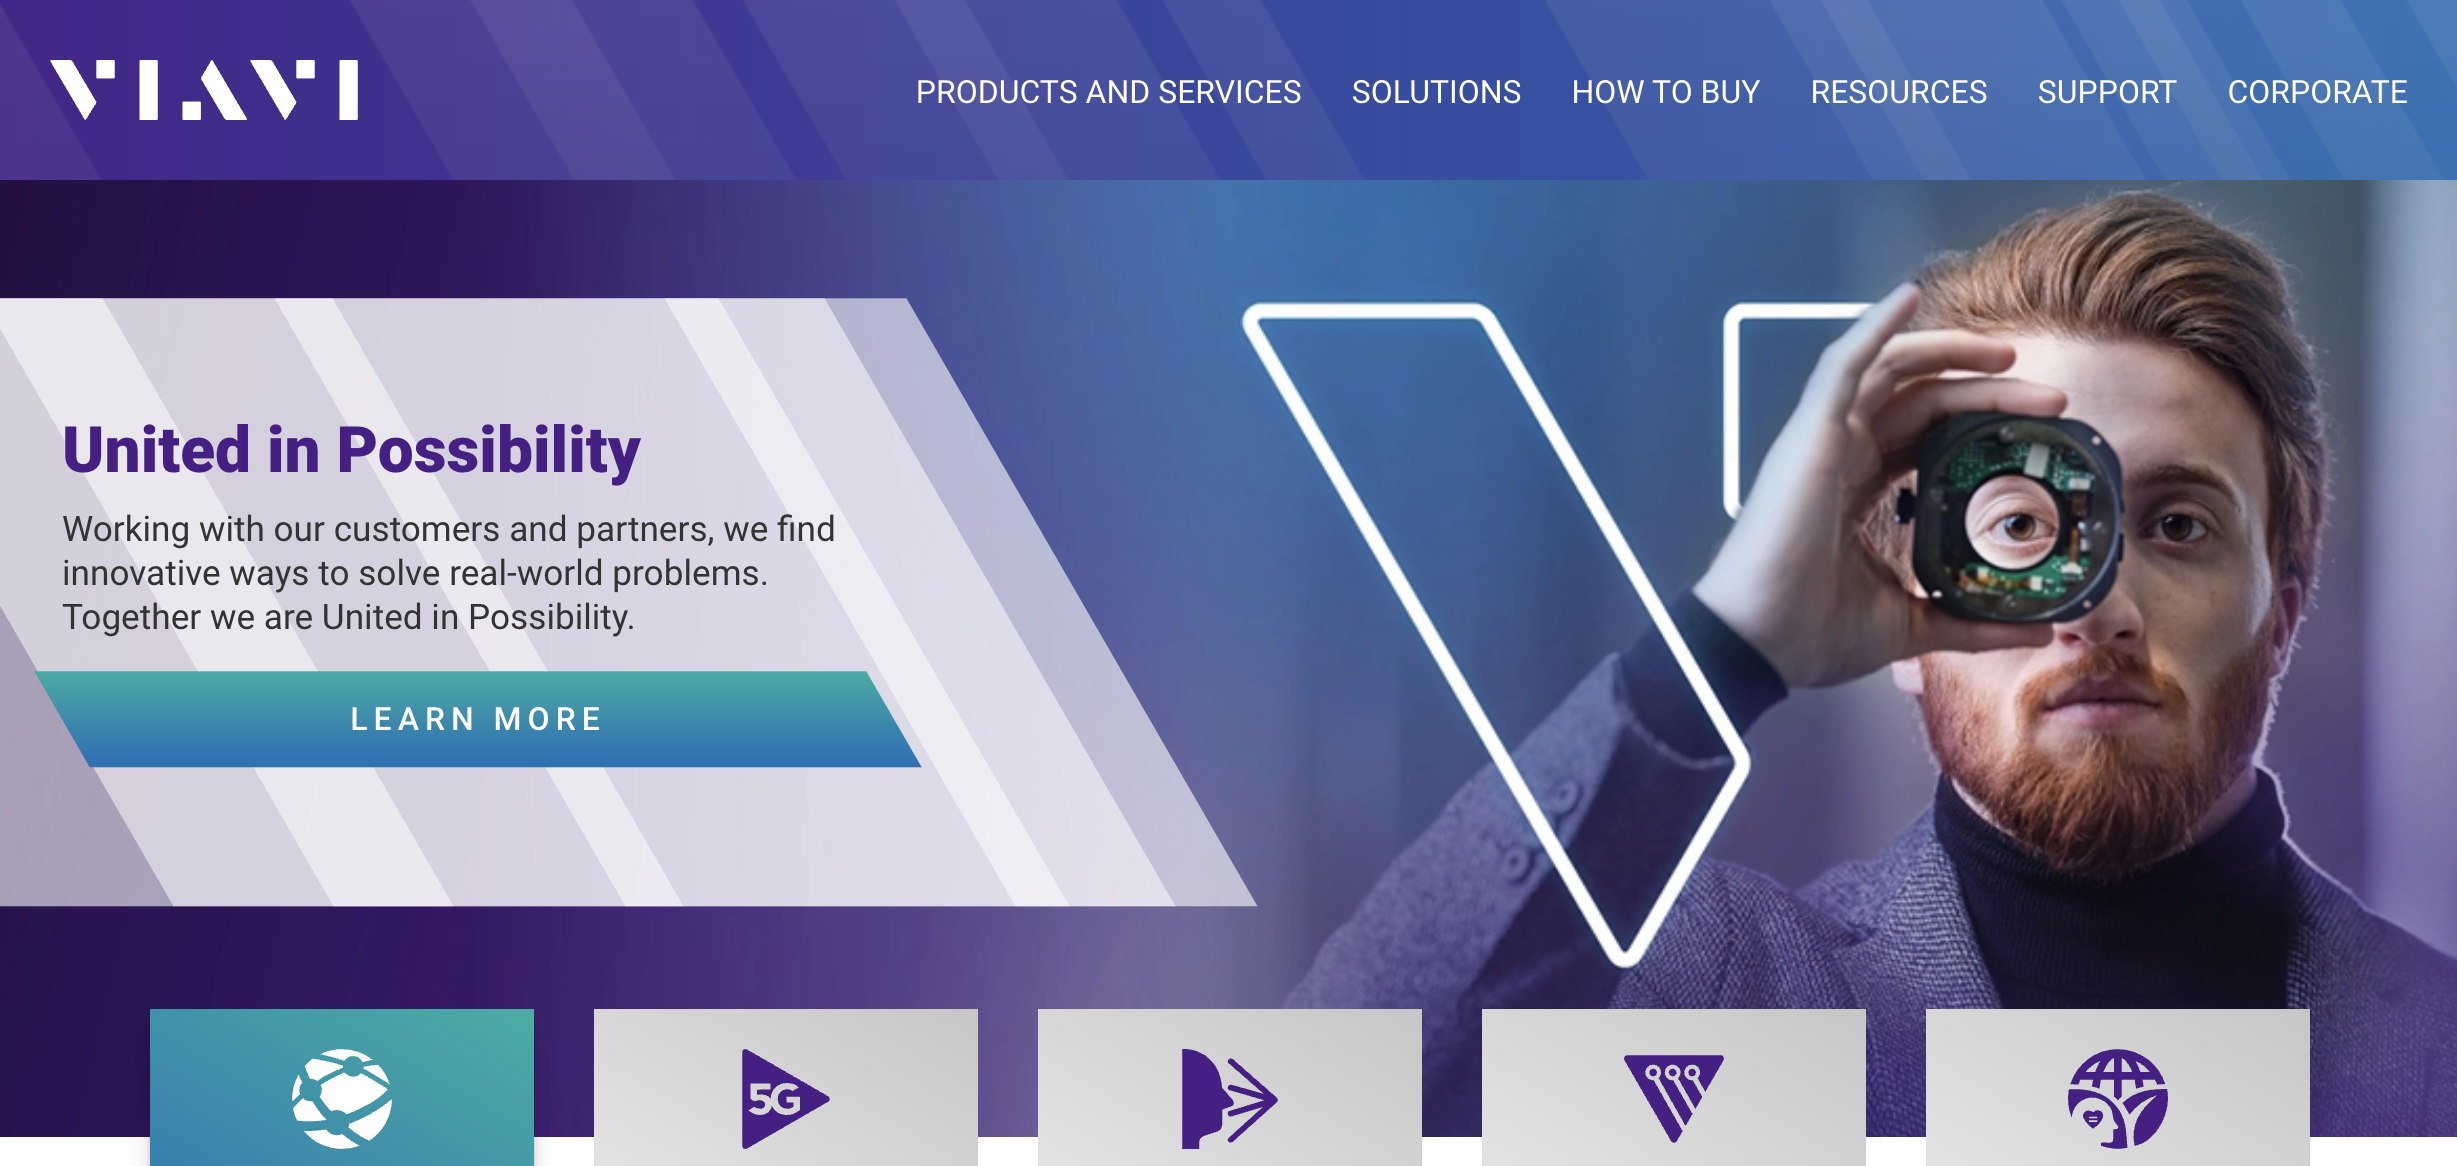 Website of VIAVI Solutions